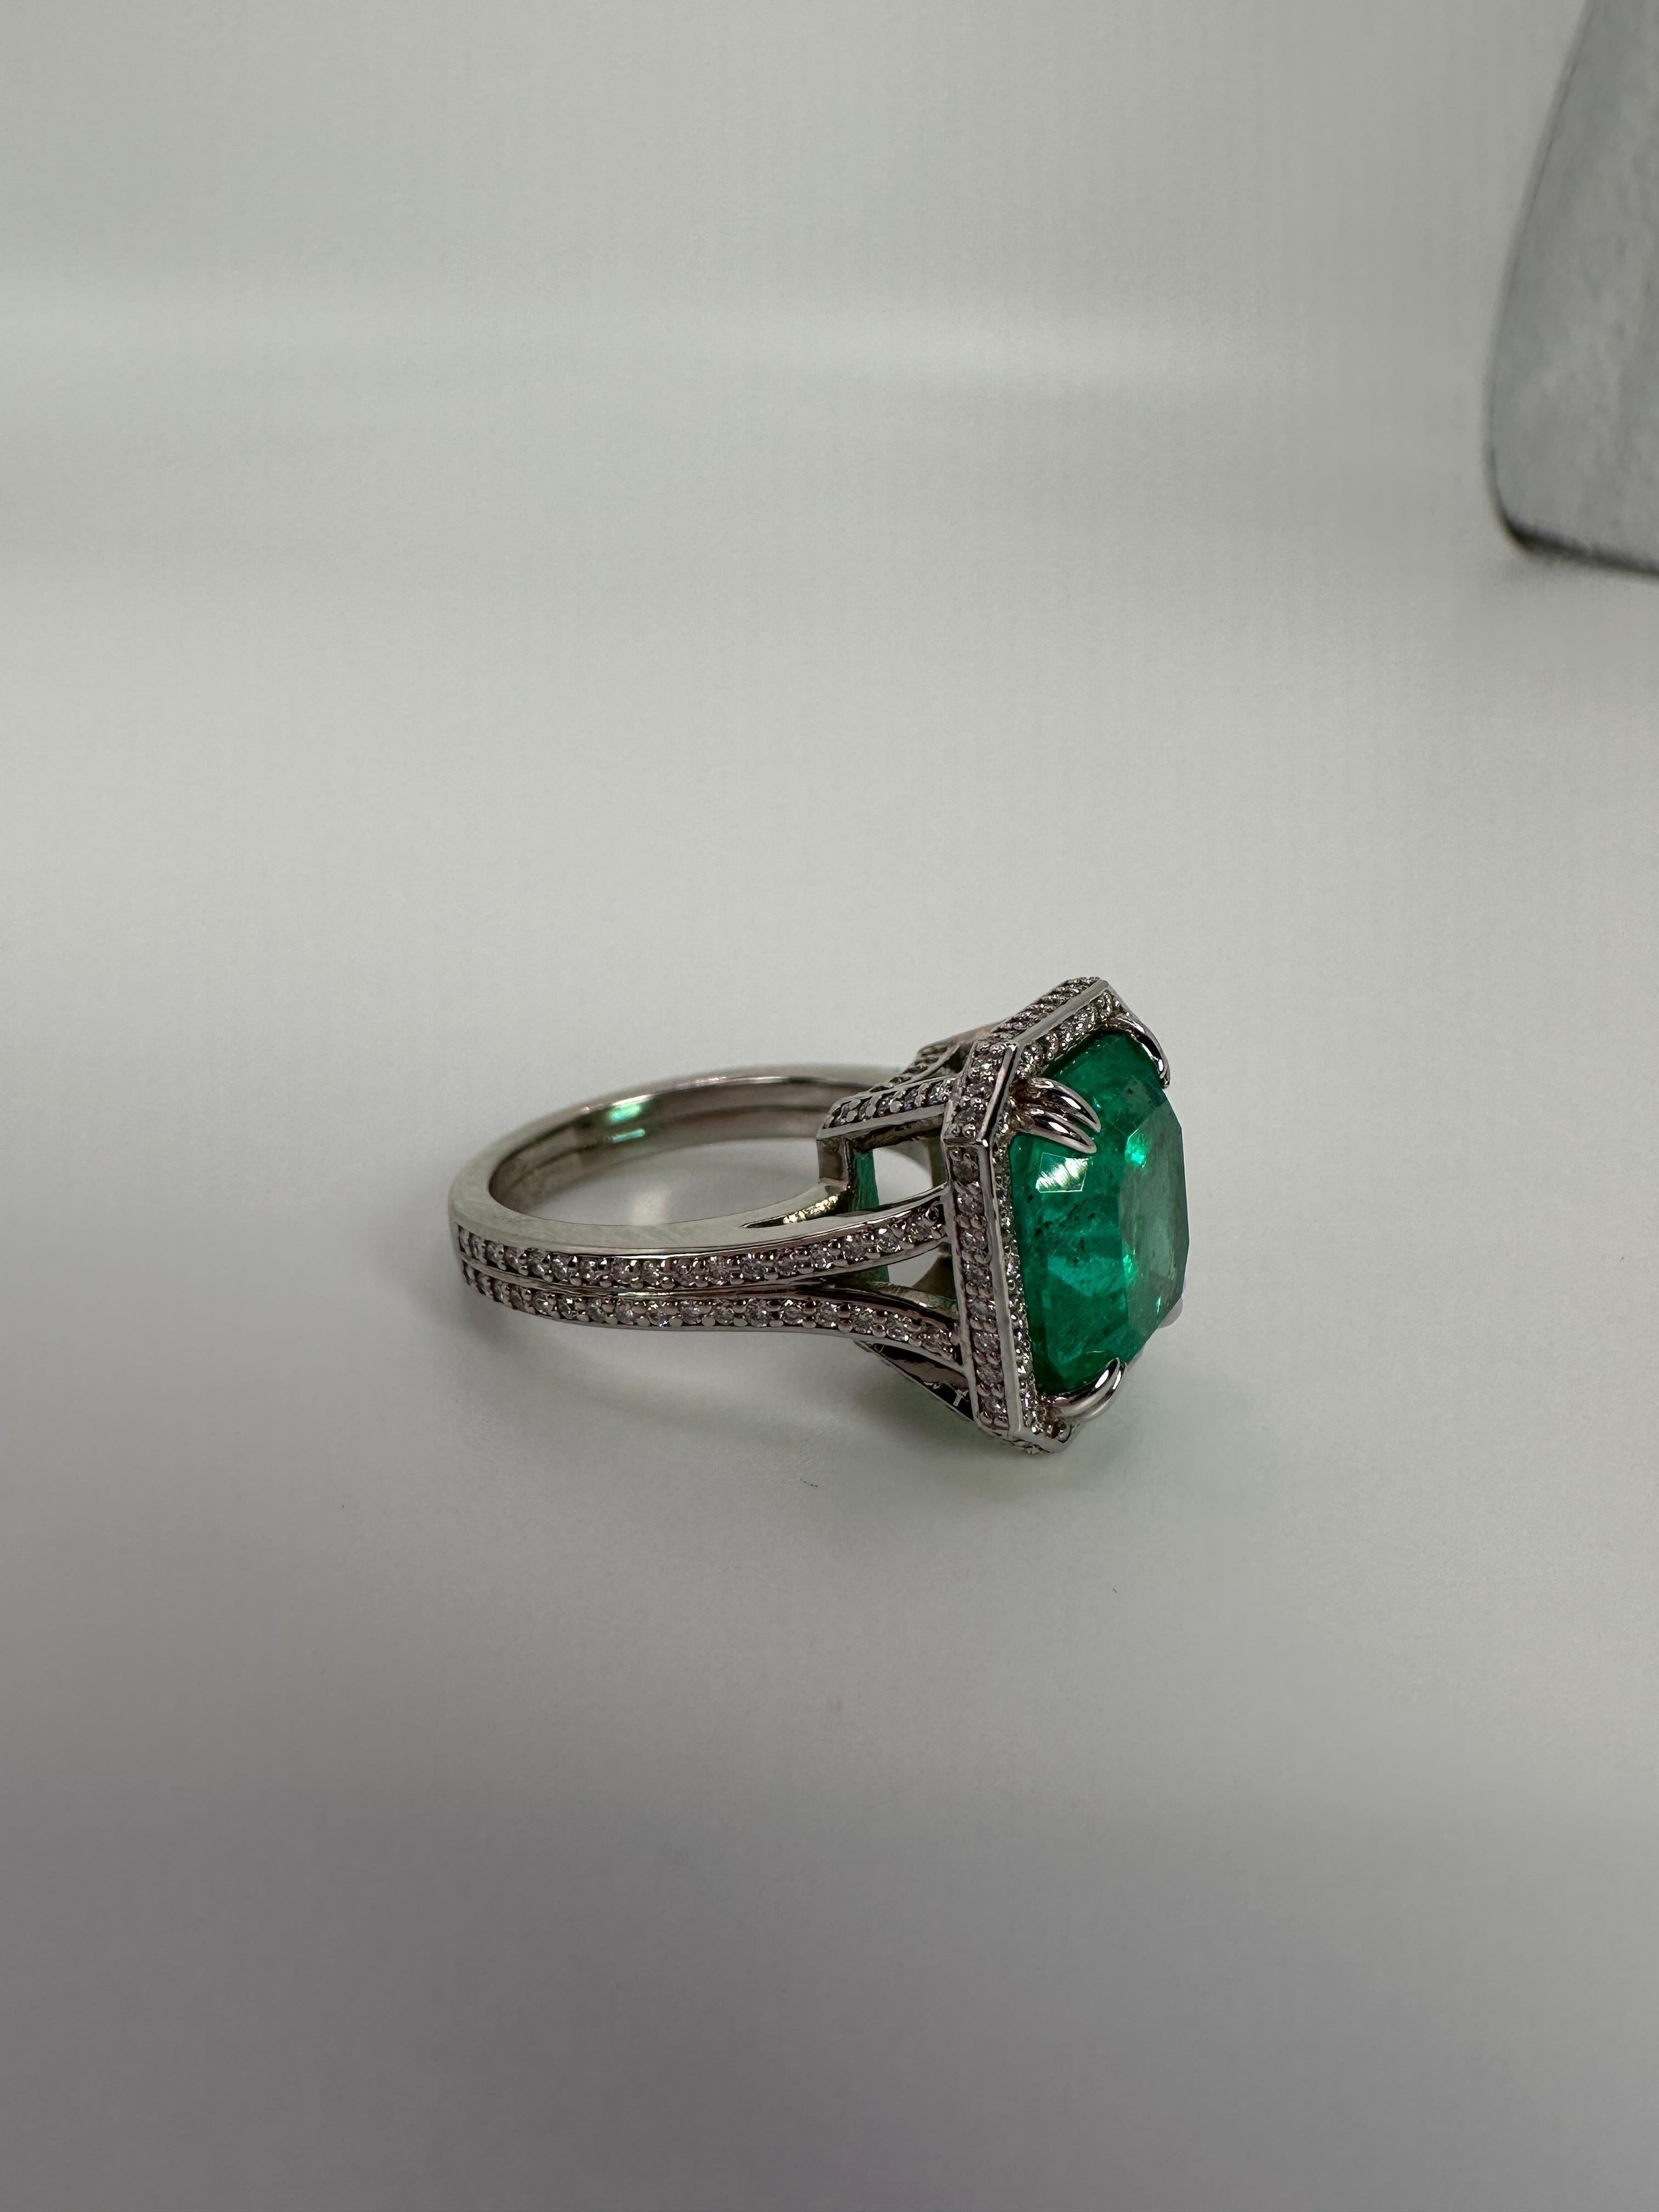 Atemberaubender Ring mit kolumbianischem Smaragd, zertifiziert von GIA - ein seltener Fund! Luxuriöser Cocktailring für alle Gelegenheiten, maßgefertigt mit modernem, klassischem Design.

Grammgewicht: 9gr
GOLD: 14KT Weißgold

NATÜRLICHE(R)